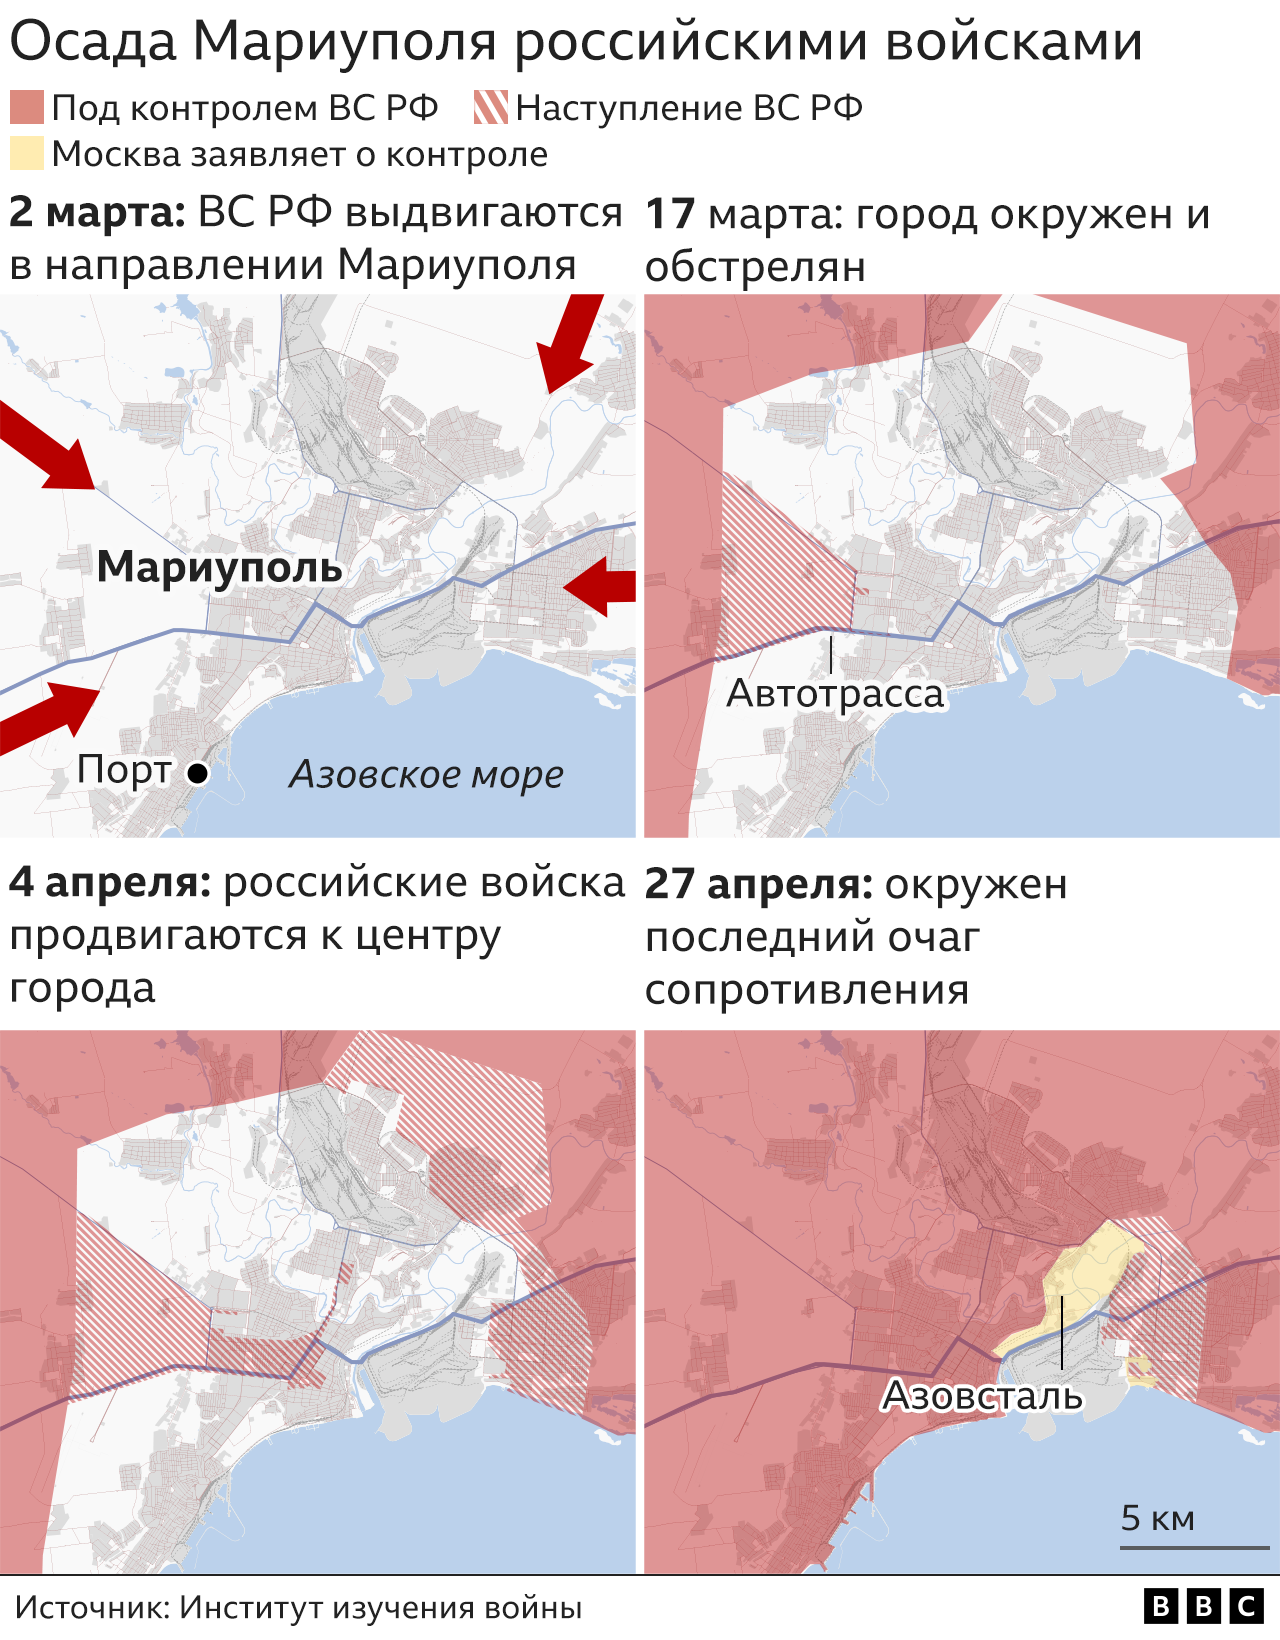 Графика: Как российские войска осаждали Мариуполь